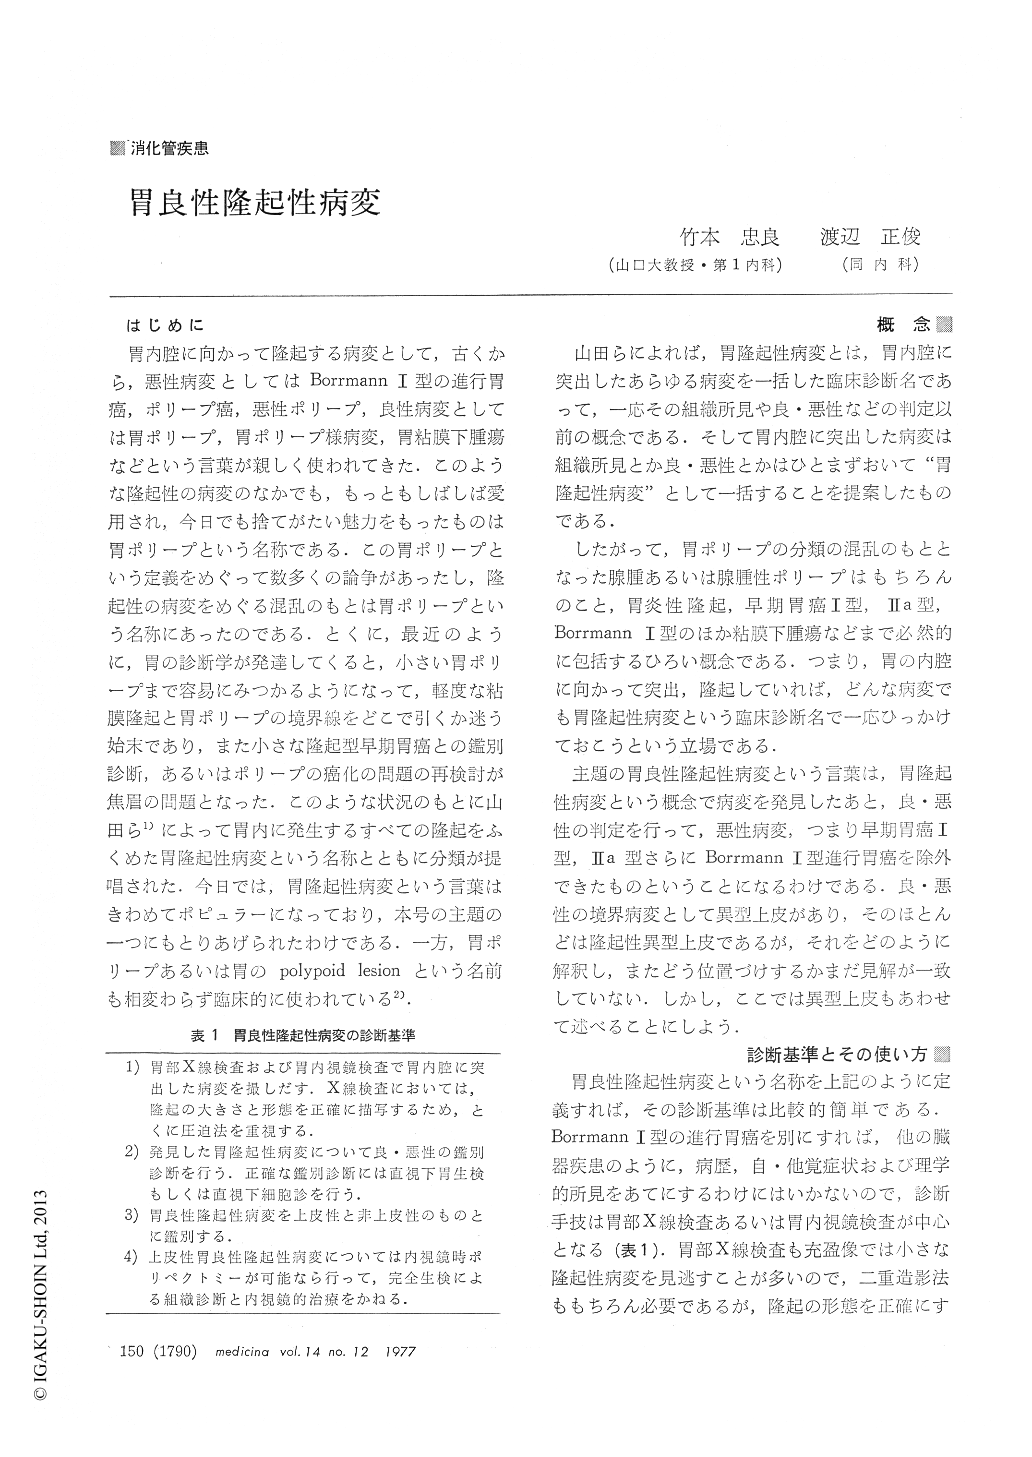 胃良性隆起性病変 Medicina 14巻12号 医書 Jp